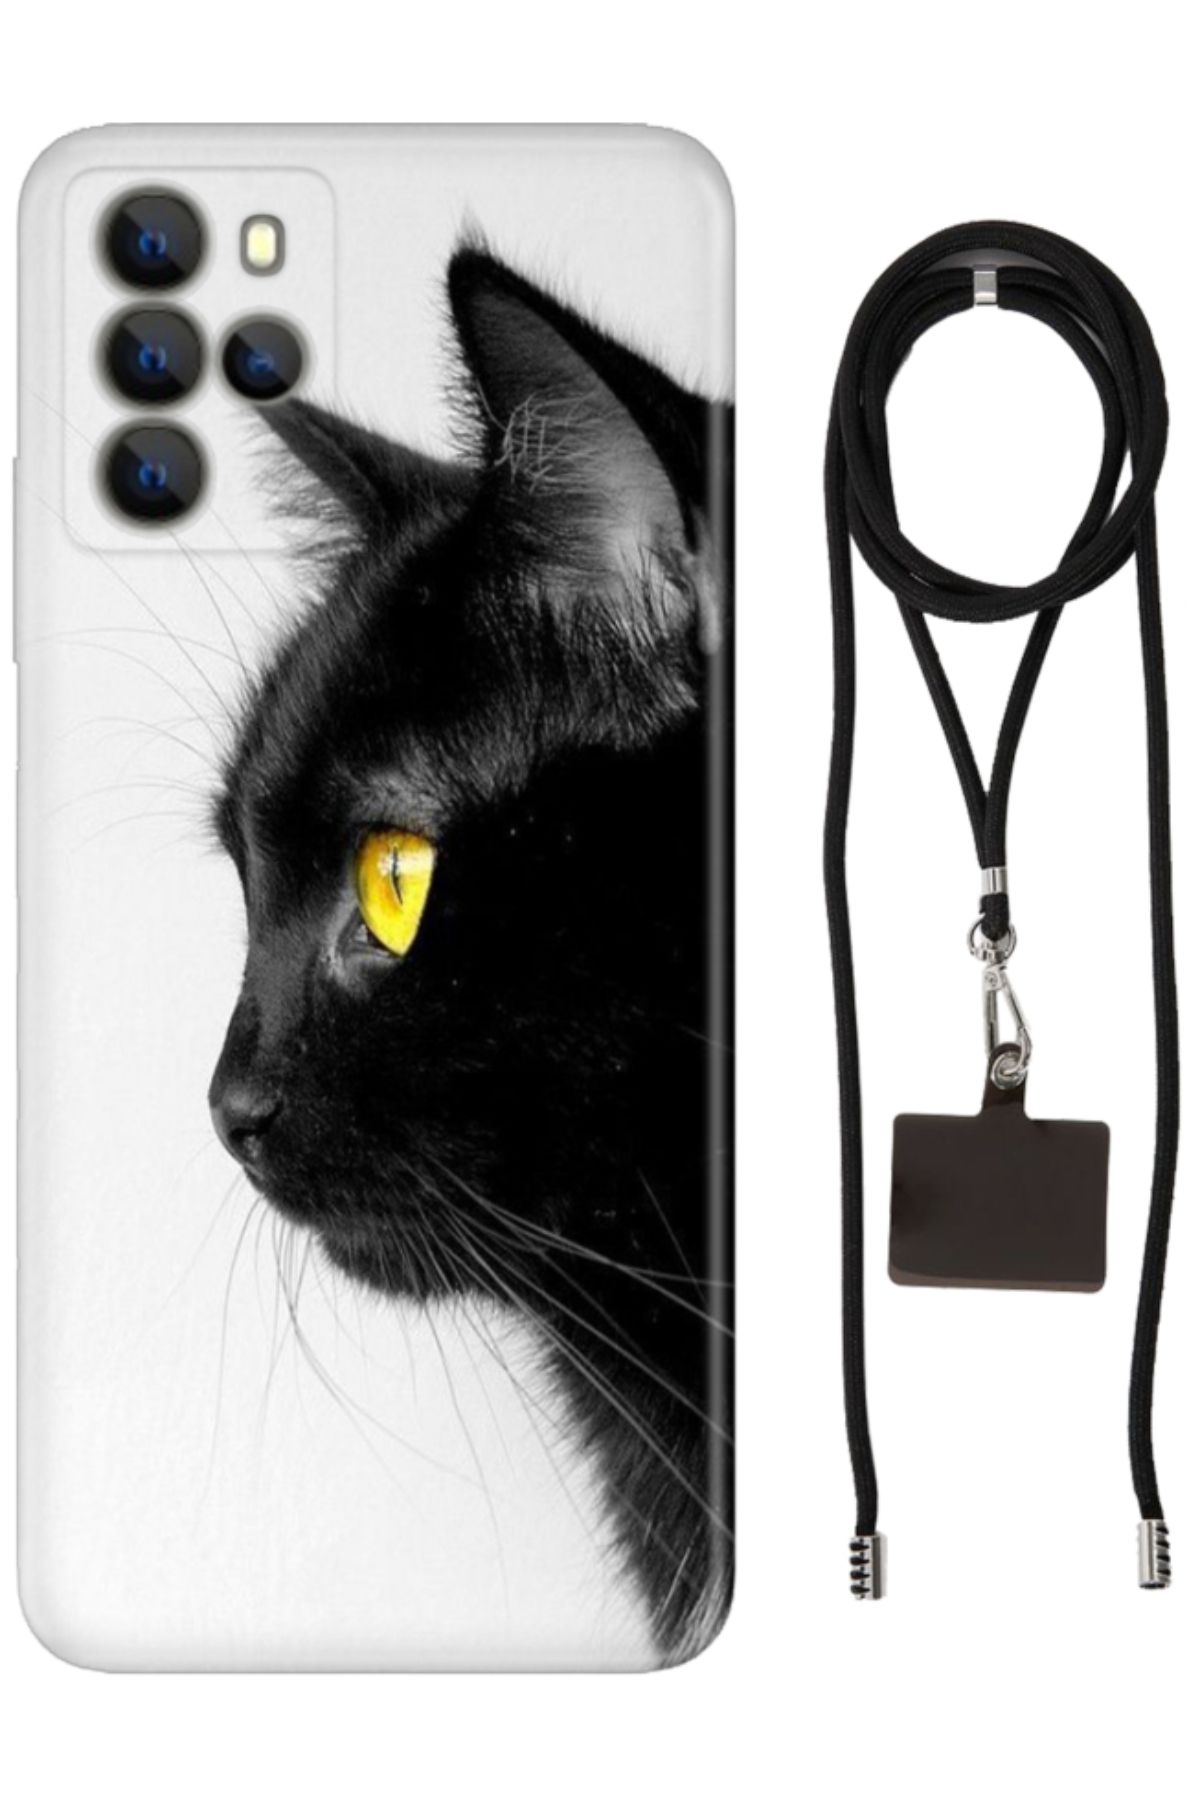 omix X700 Uyumlu Kılıf Boyun Askılı Telefon Askısı ve Desenli Silikon Kedi Bakışı